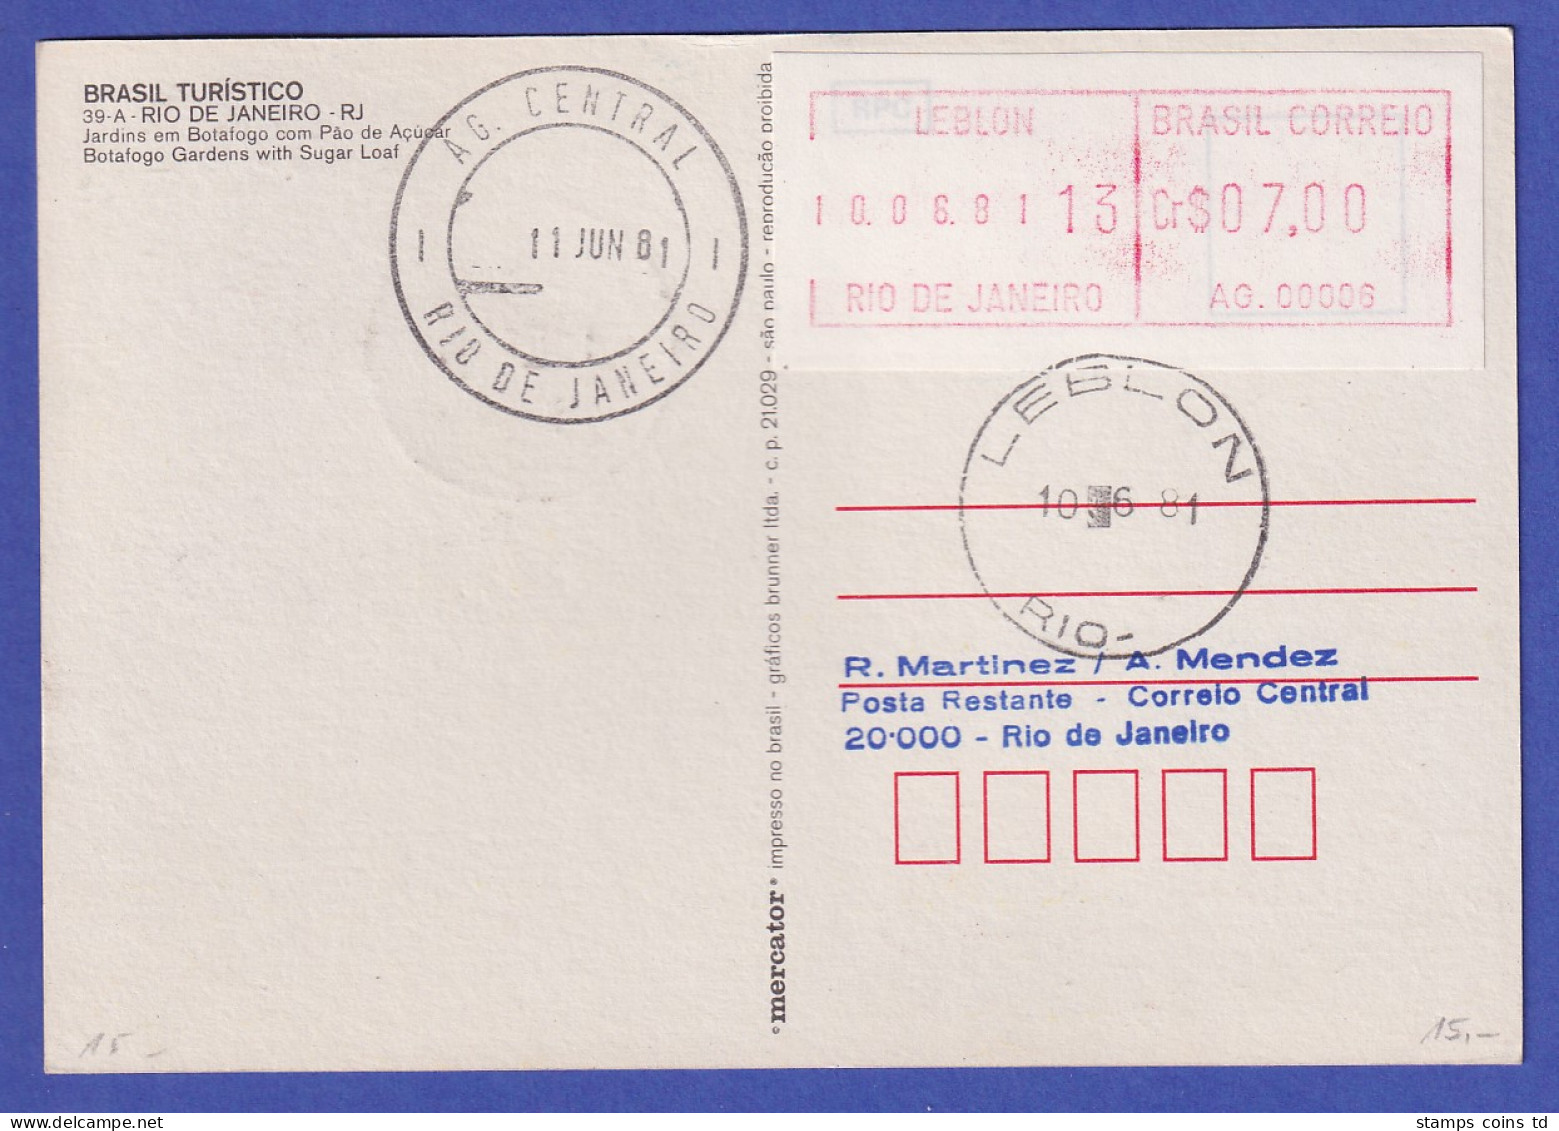 Brasilien Frama-ATM AG.00006 Und VA.00005 LEBLON Auf Ansichtskarte, O 10.06.81 - Frankeervignetten (Frama)